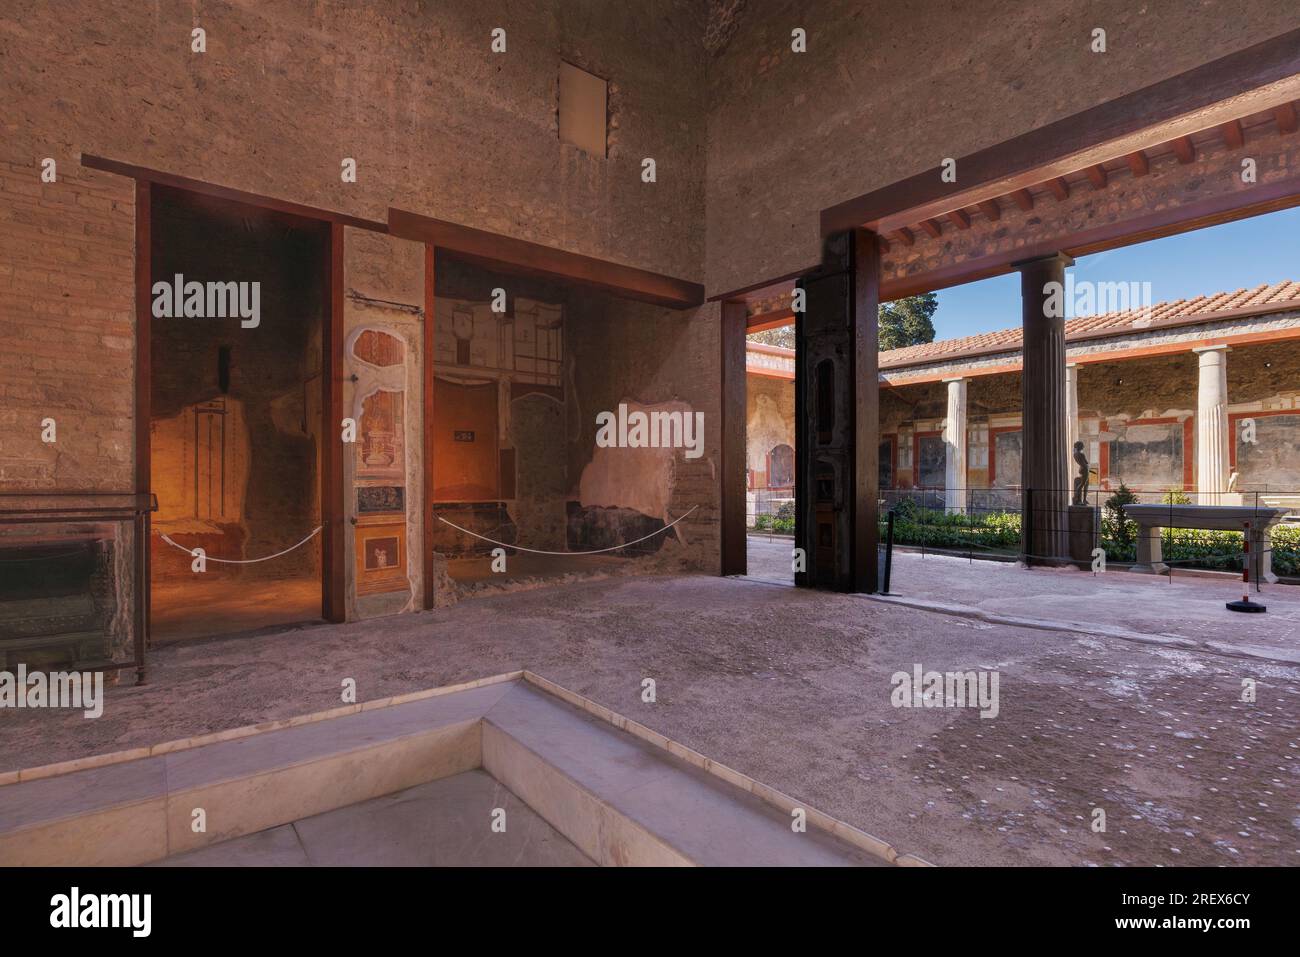 Sito archeologico di Pompei, Campania, Italia. L'atrio. Casa dei Vettii. Casa dei Vettii. Pompei, Ercolano e Torre Annunziata sono co Foto Stock